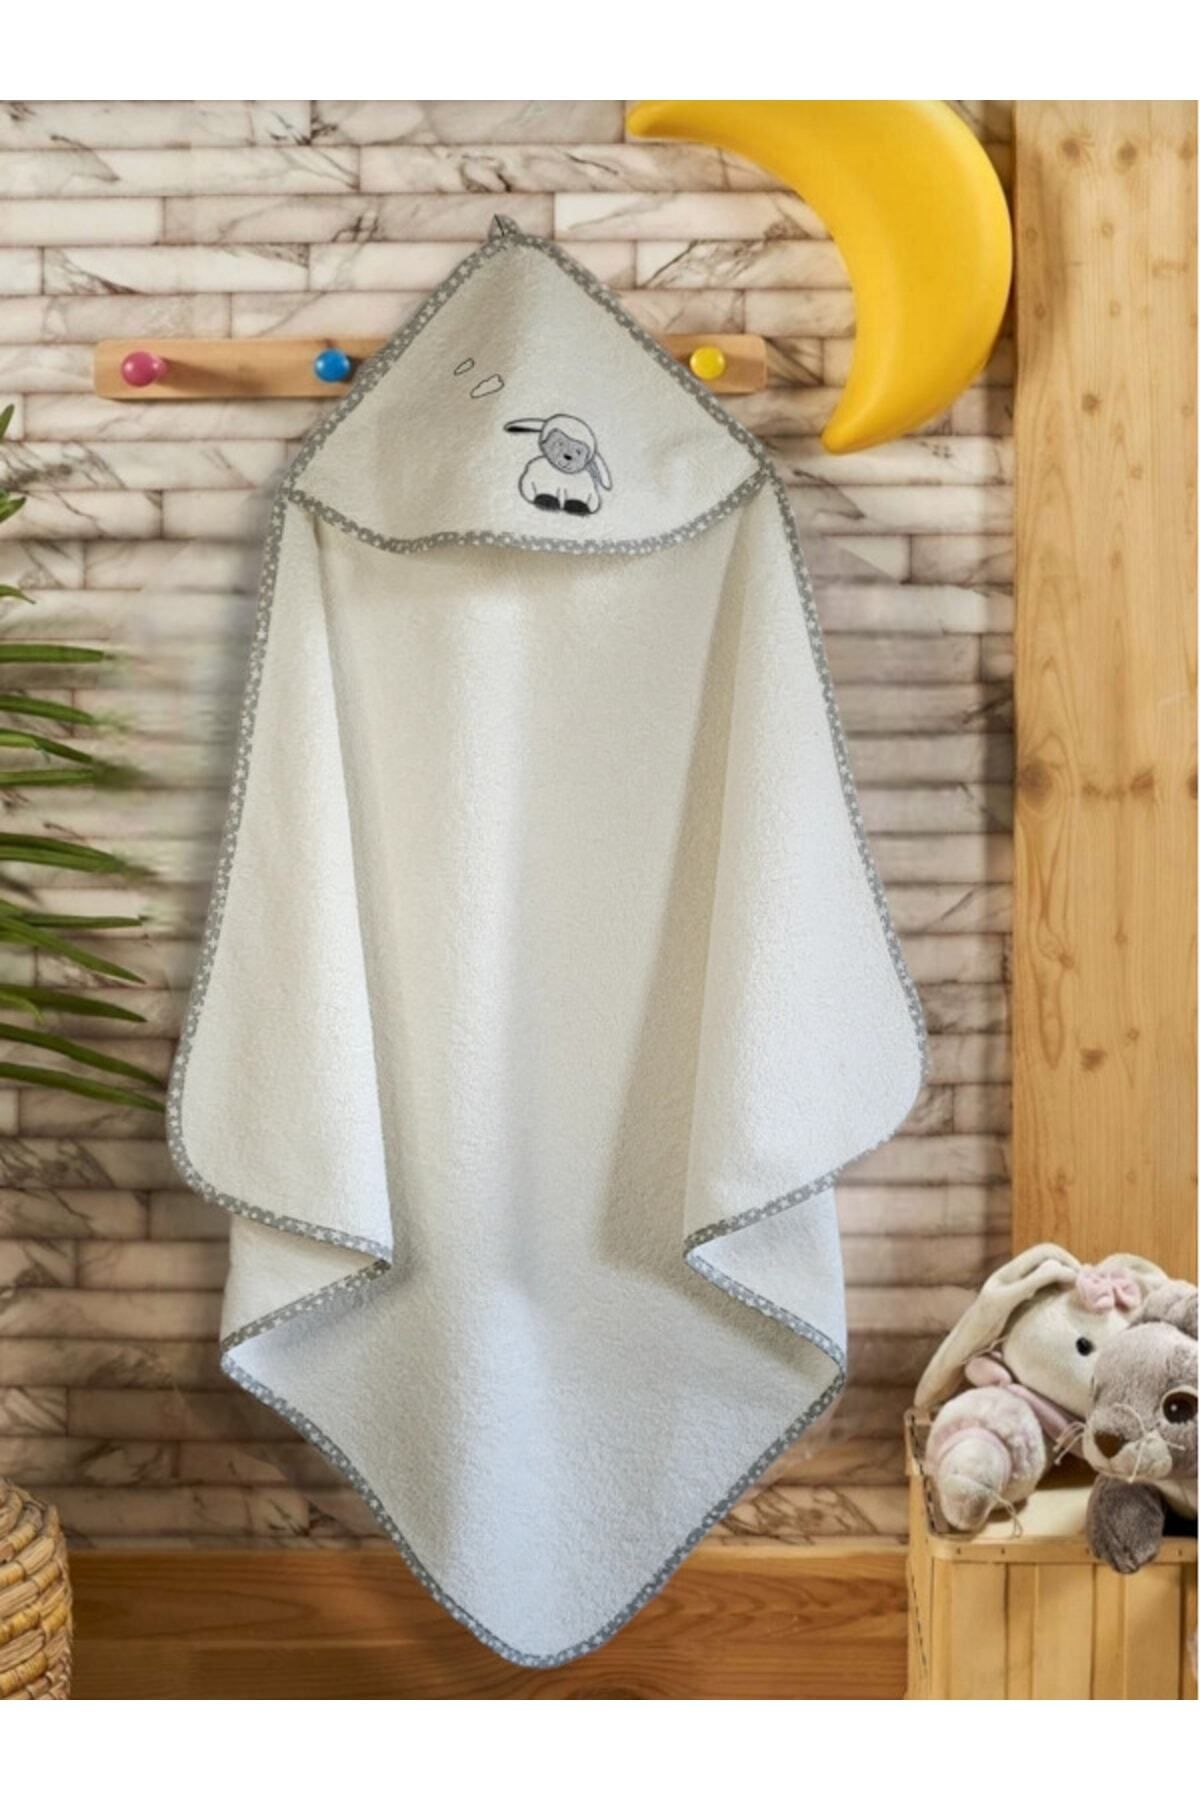 Alpar Tekstil Pamuklu Kız-erkek Bebek Banyo Havlu Kundak 100x100cm (0-5 YAŞ) Outlet Ürün / Kuzu